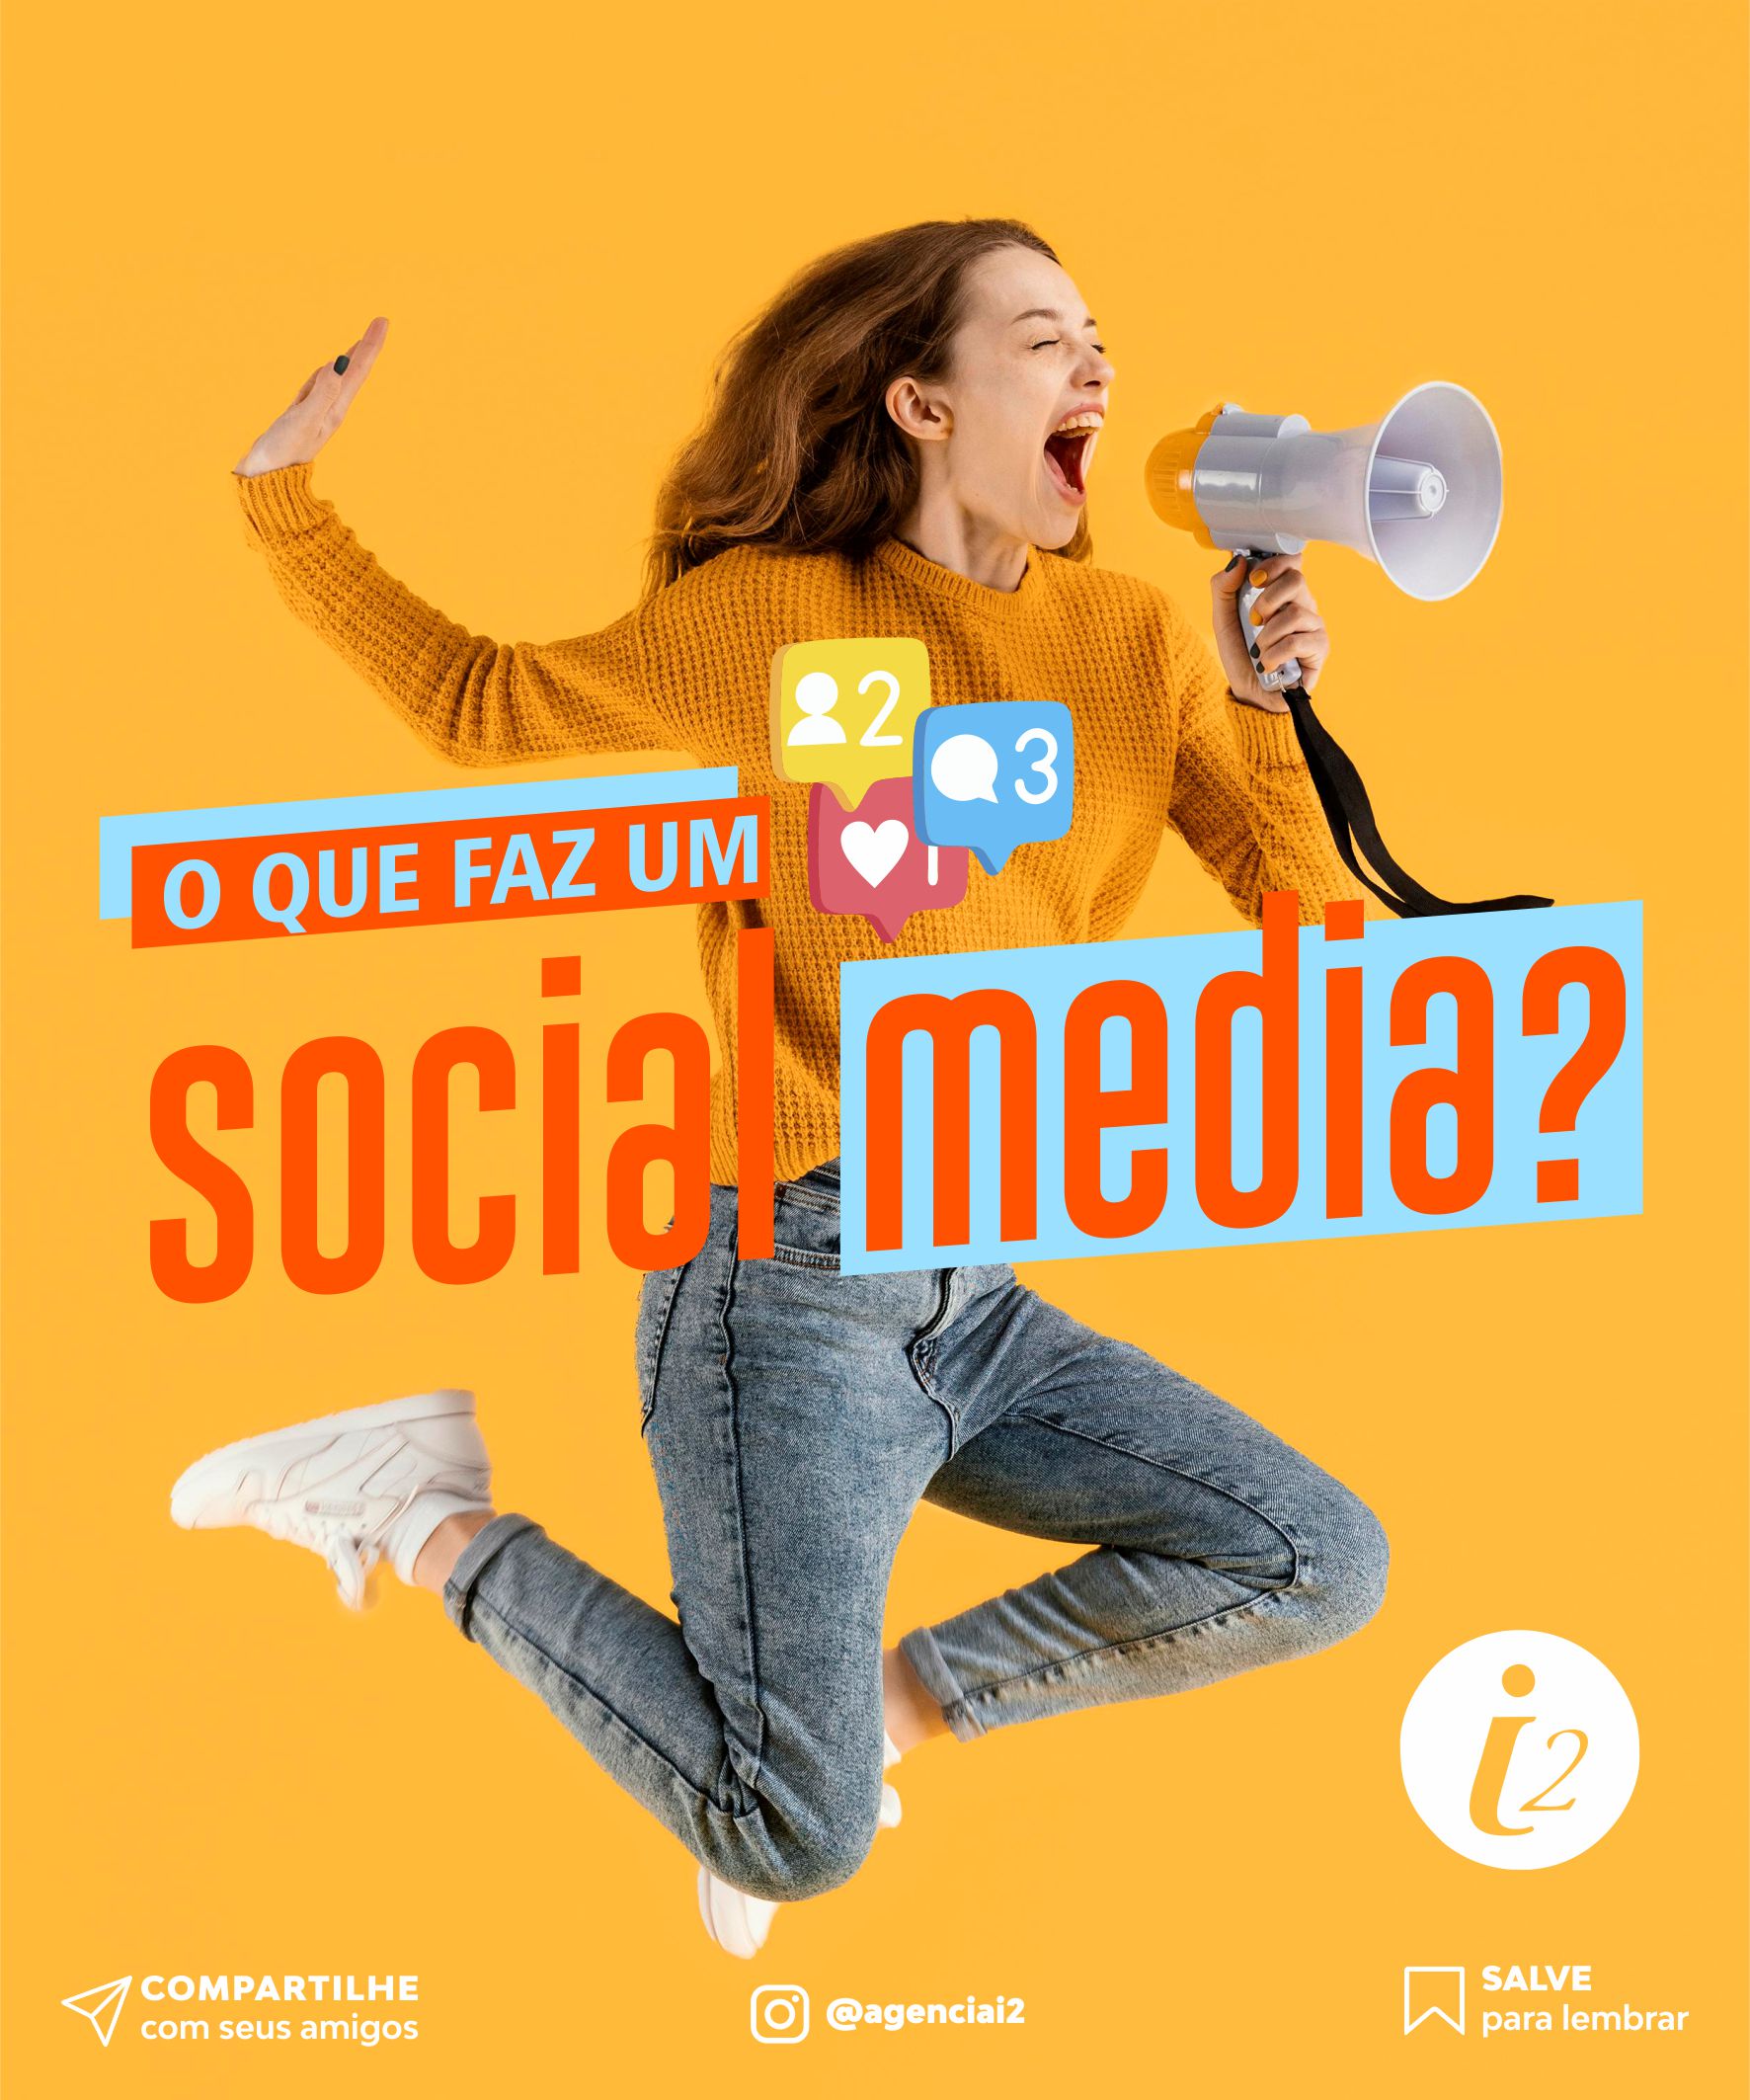 O que faz um social media?